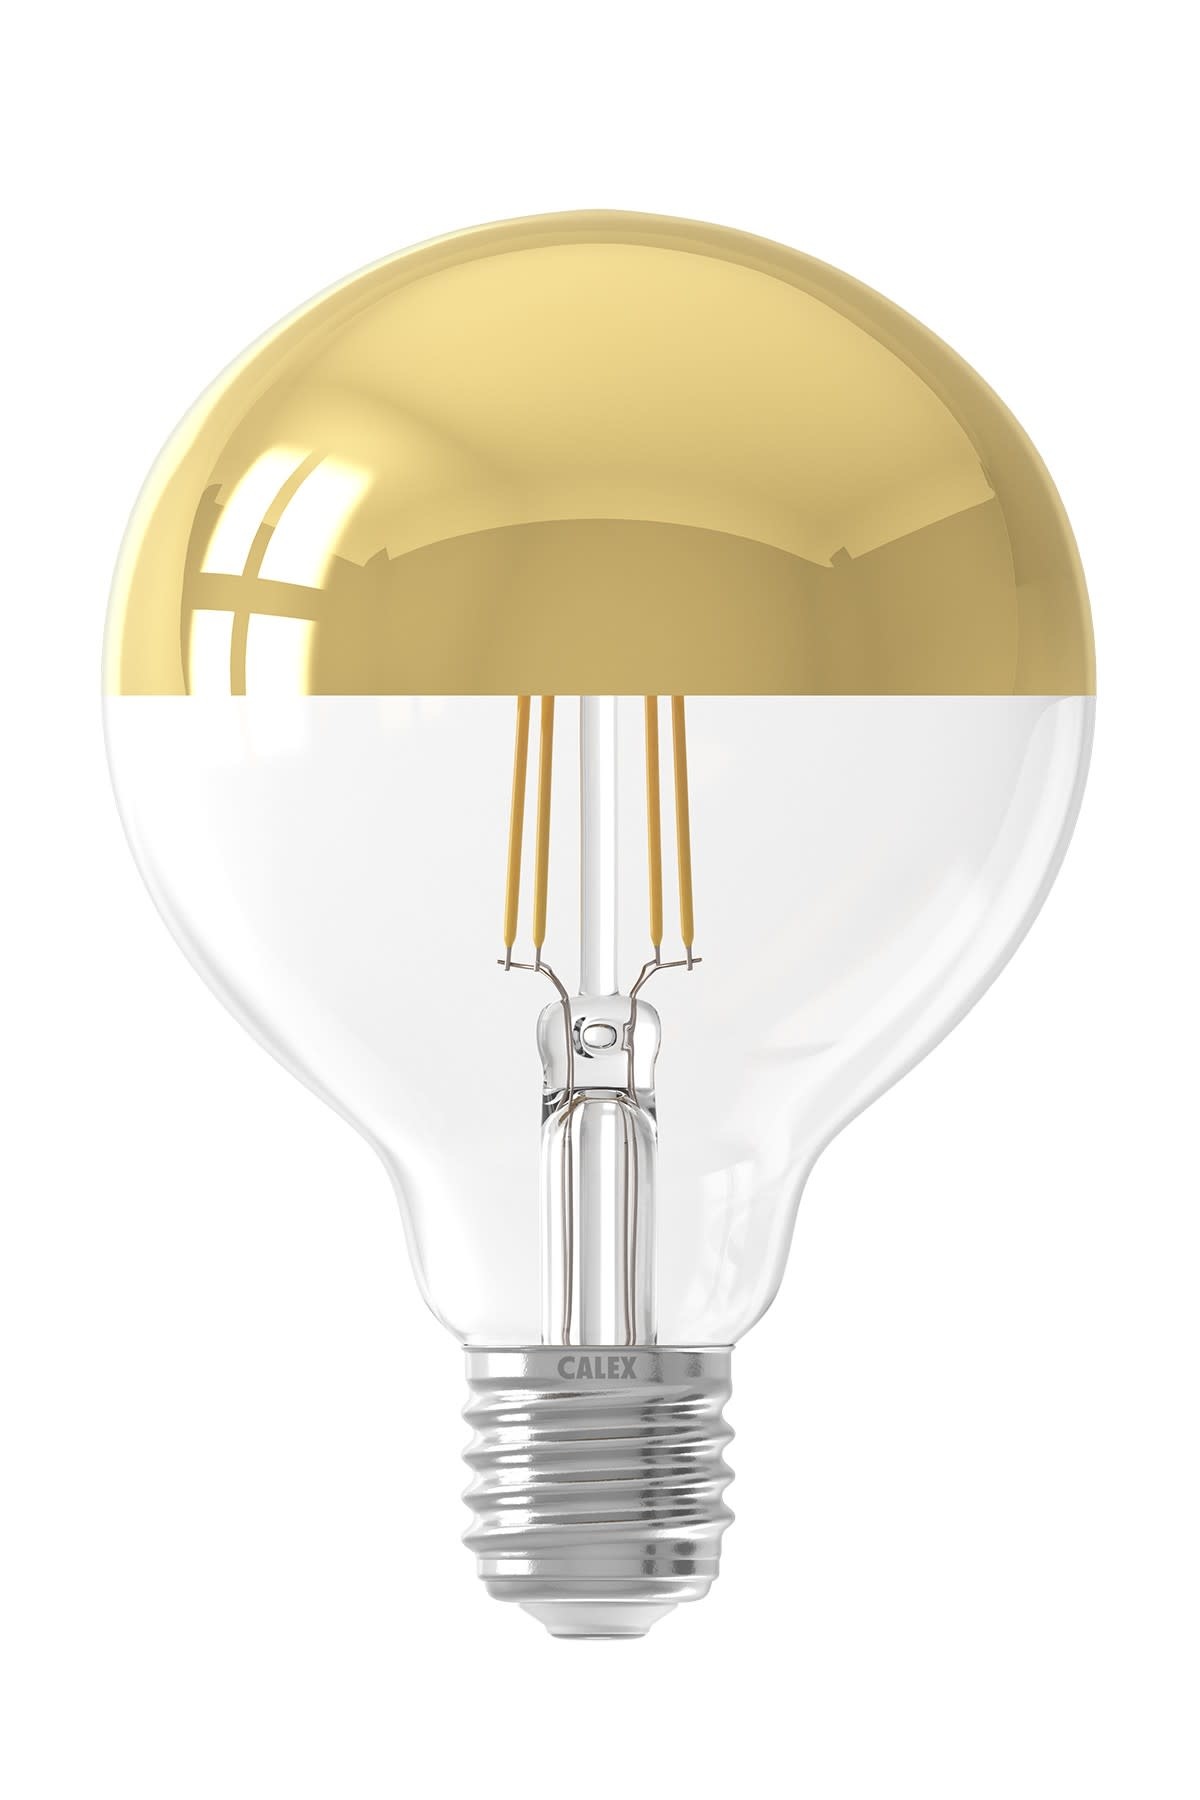 marionet hart Maakte zich klaar Calex - Decoratieve LED lamp goud - E27 - Het Appeltaartgevoel